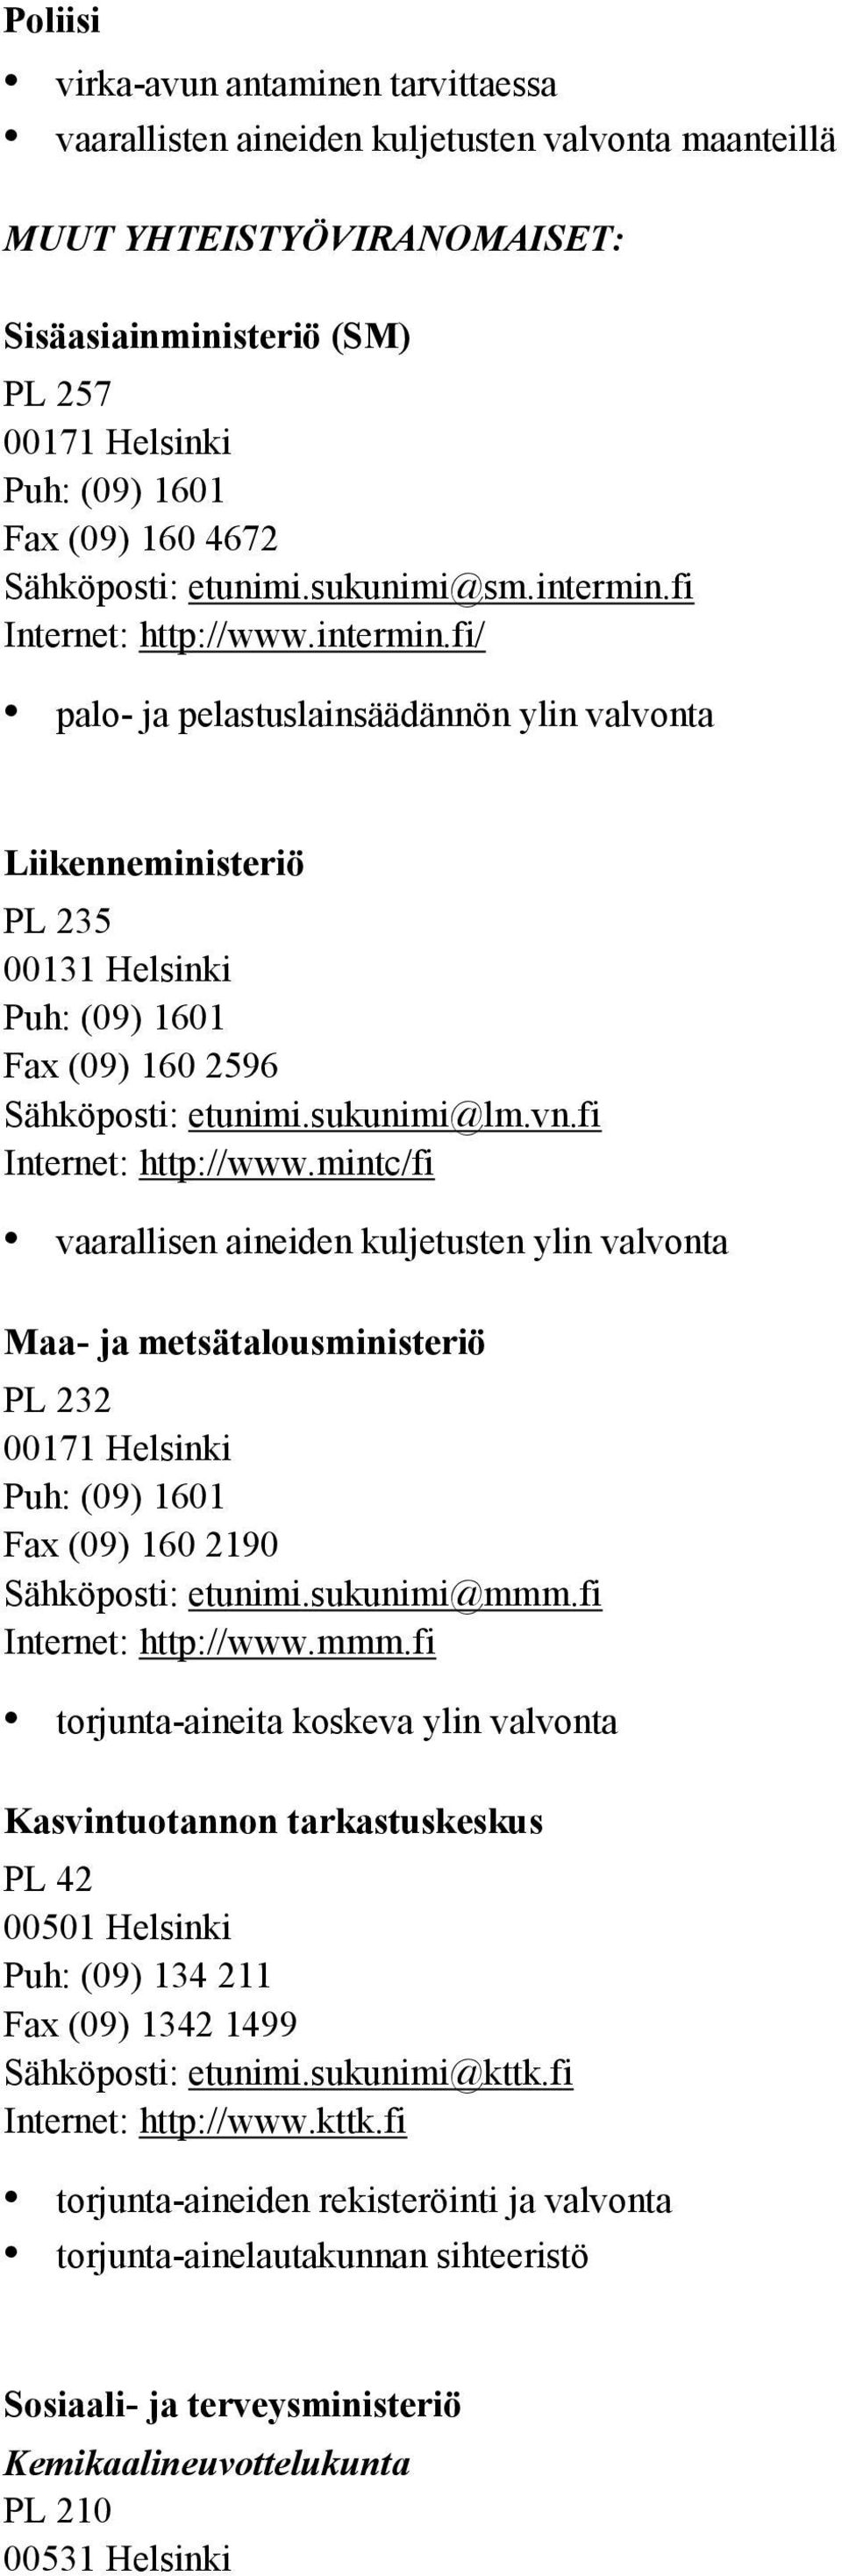 sukunimi@lm.vn.fi Internet: http://www.mintc/fi vaarallisen aineiden kuljetusten ylin valvonta Maa- ja metsätalousministeriö PL 232 00171 Helsinki Puh: (09) 1601 Fax (09) 160 2190 Sähköposti: etunimi.